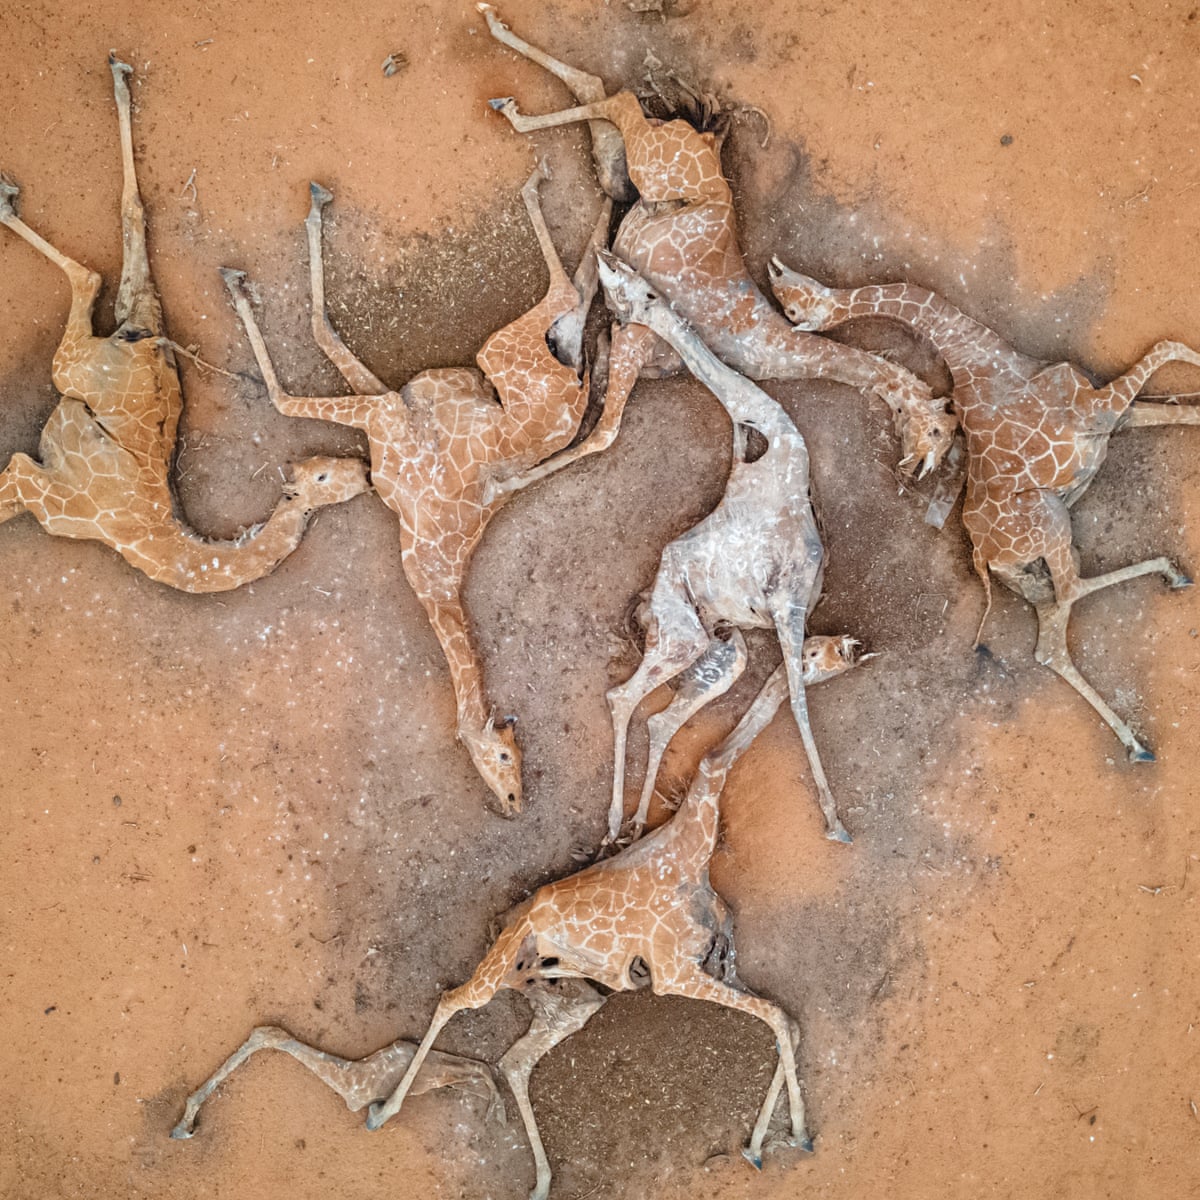 Tremenda foto de seis jirafas muertas por la gran sequía que azota Kenia. La sequía en la región también ha puesto en riesgo el acceso a agua a casi tres millones de personas que requieren asistencia humanitaria. 📷 Ed Ram google.com/amp/s/amp.theg…